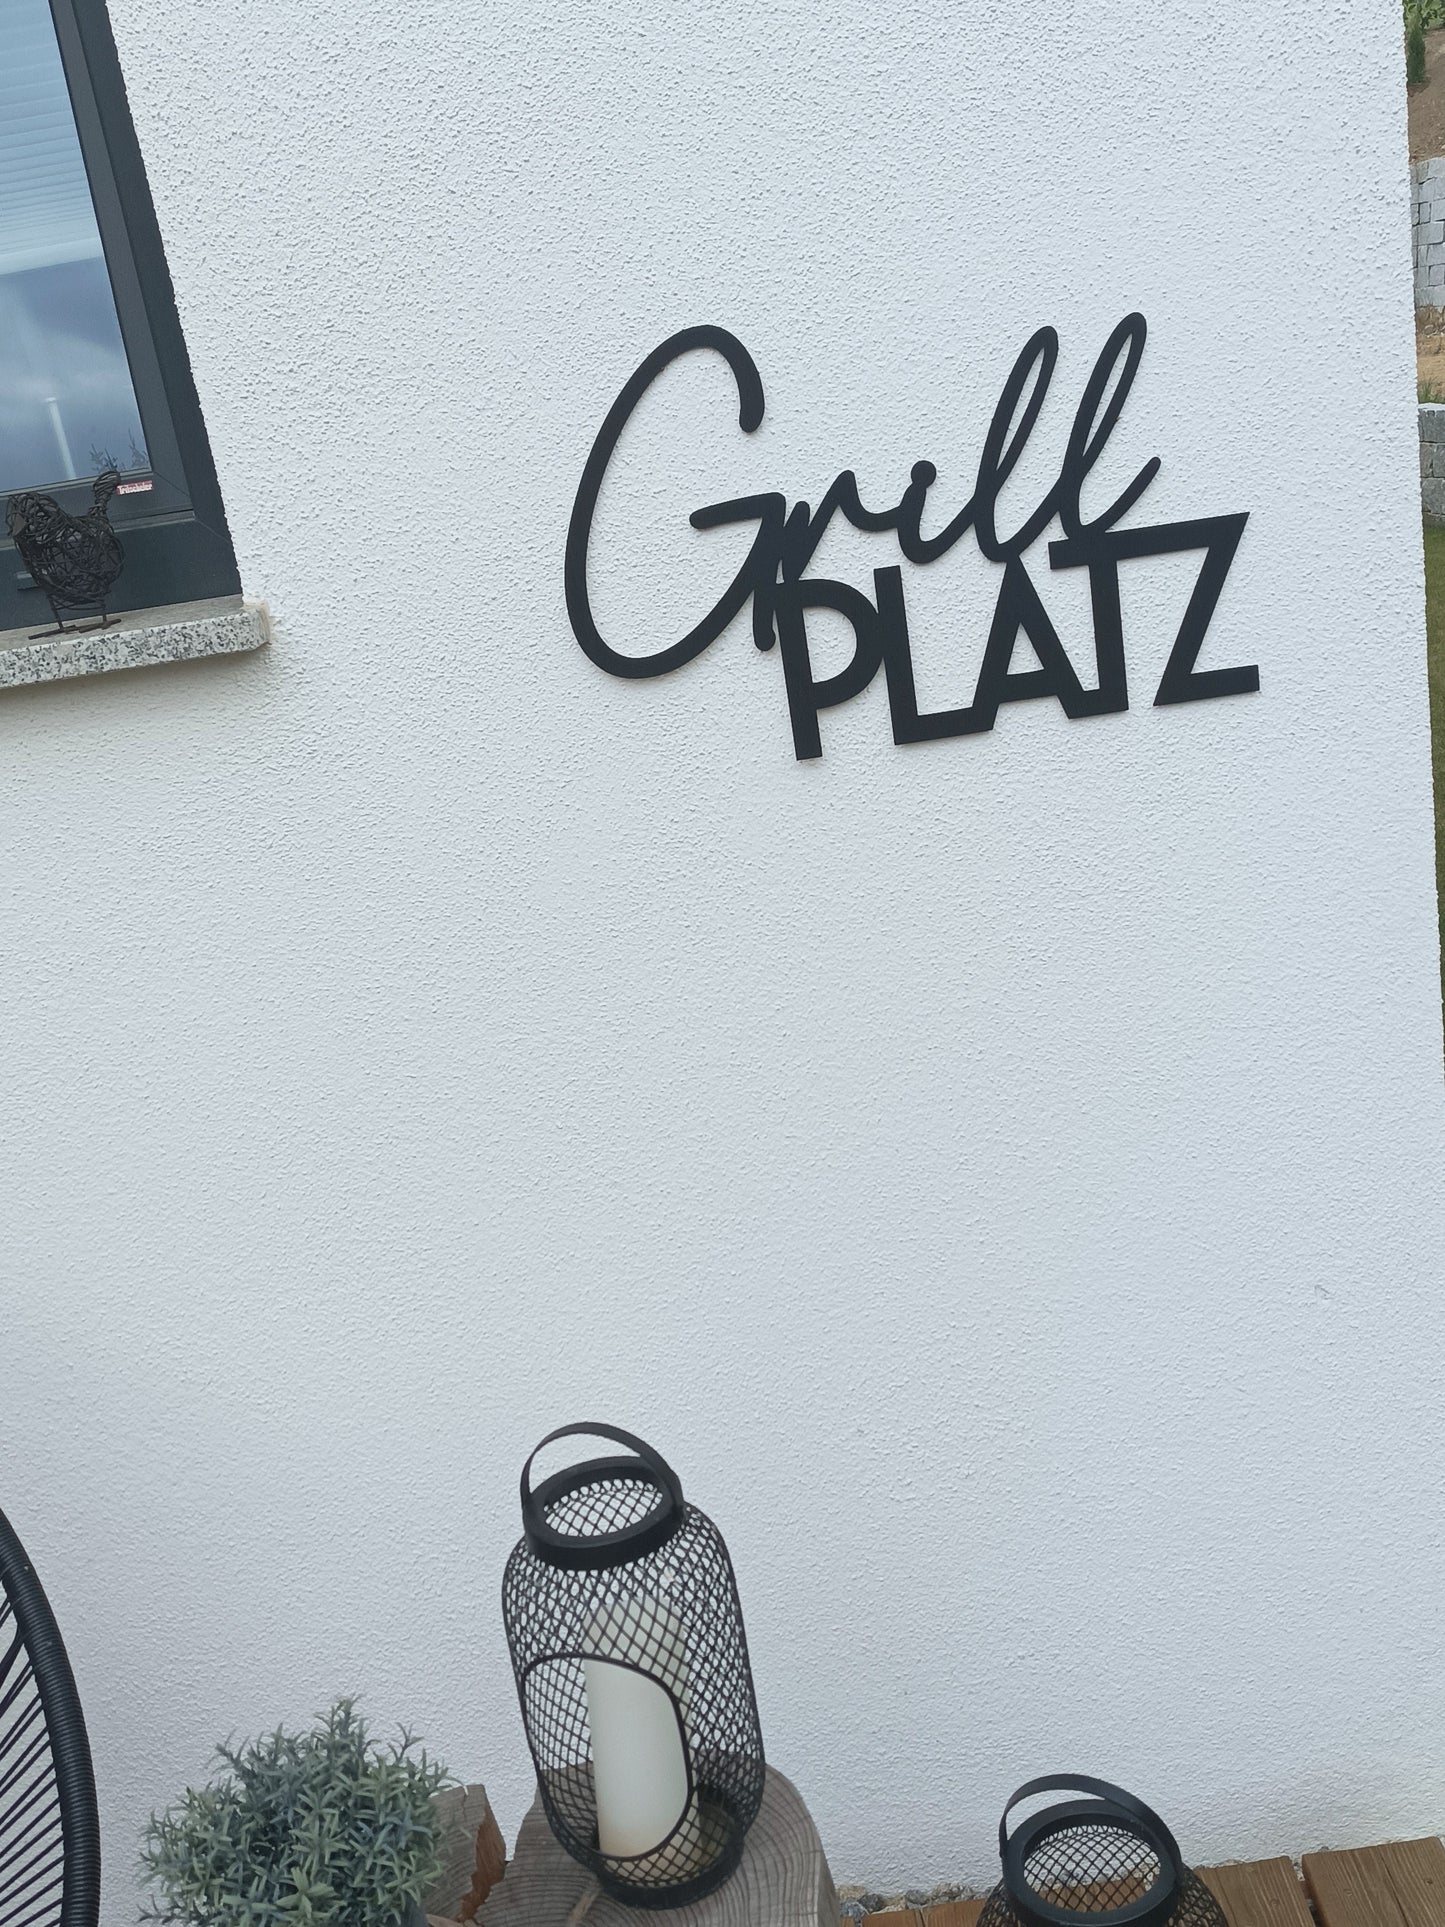 Holzspruch - Grillplatz